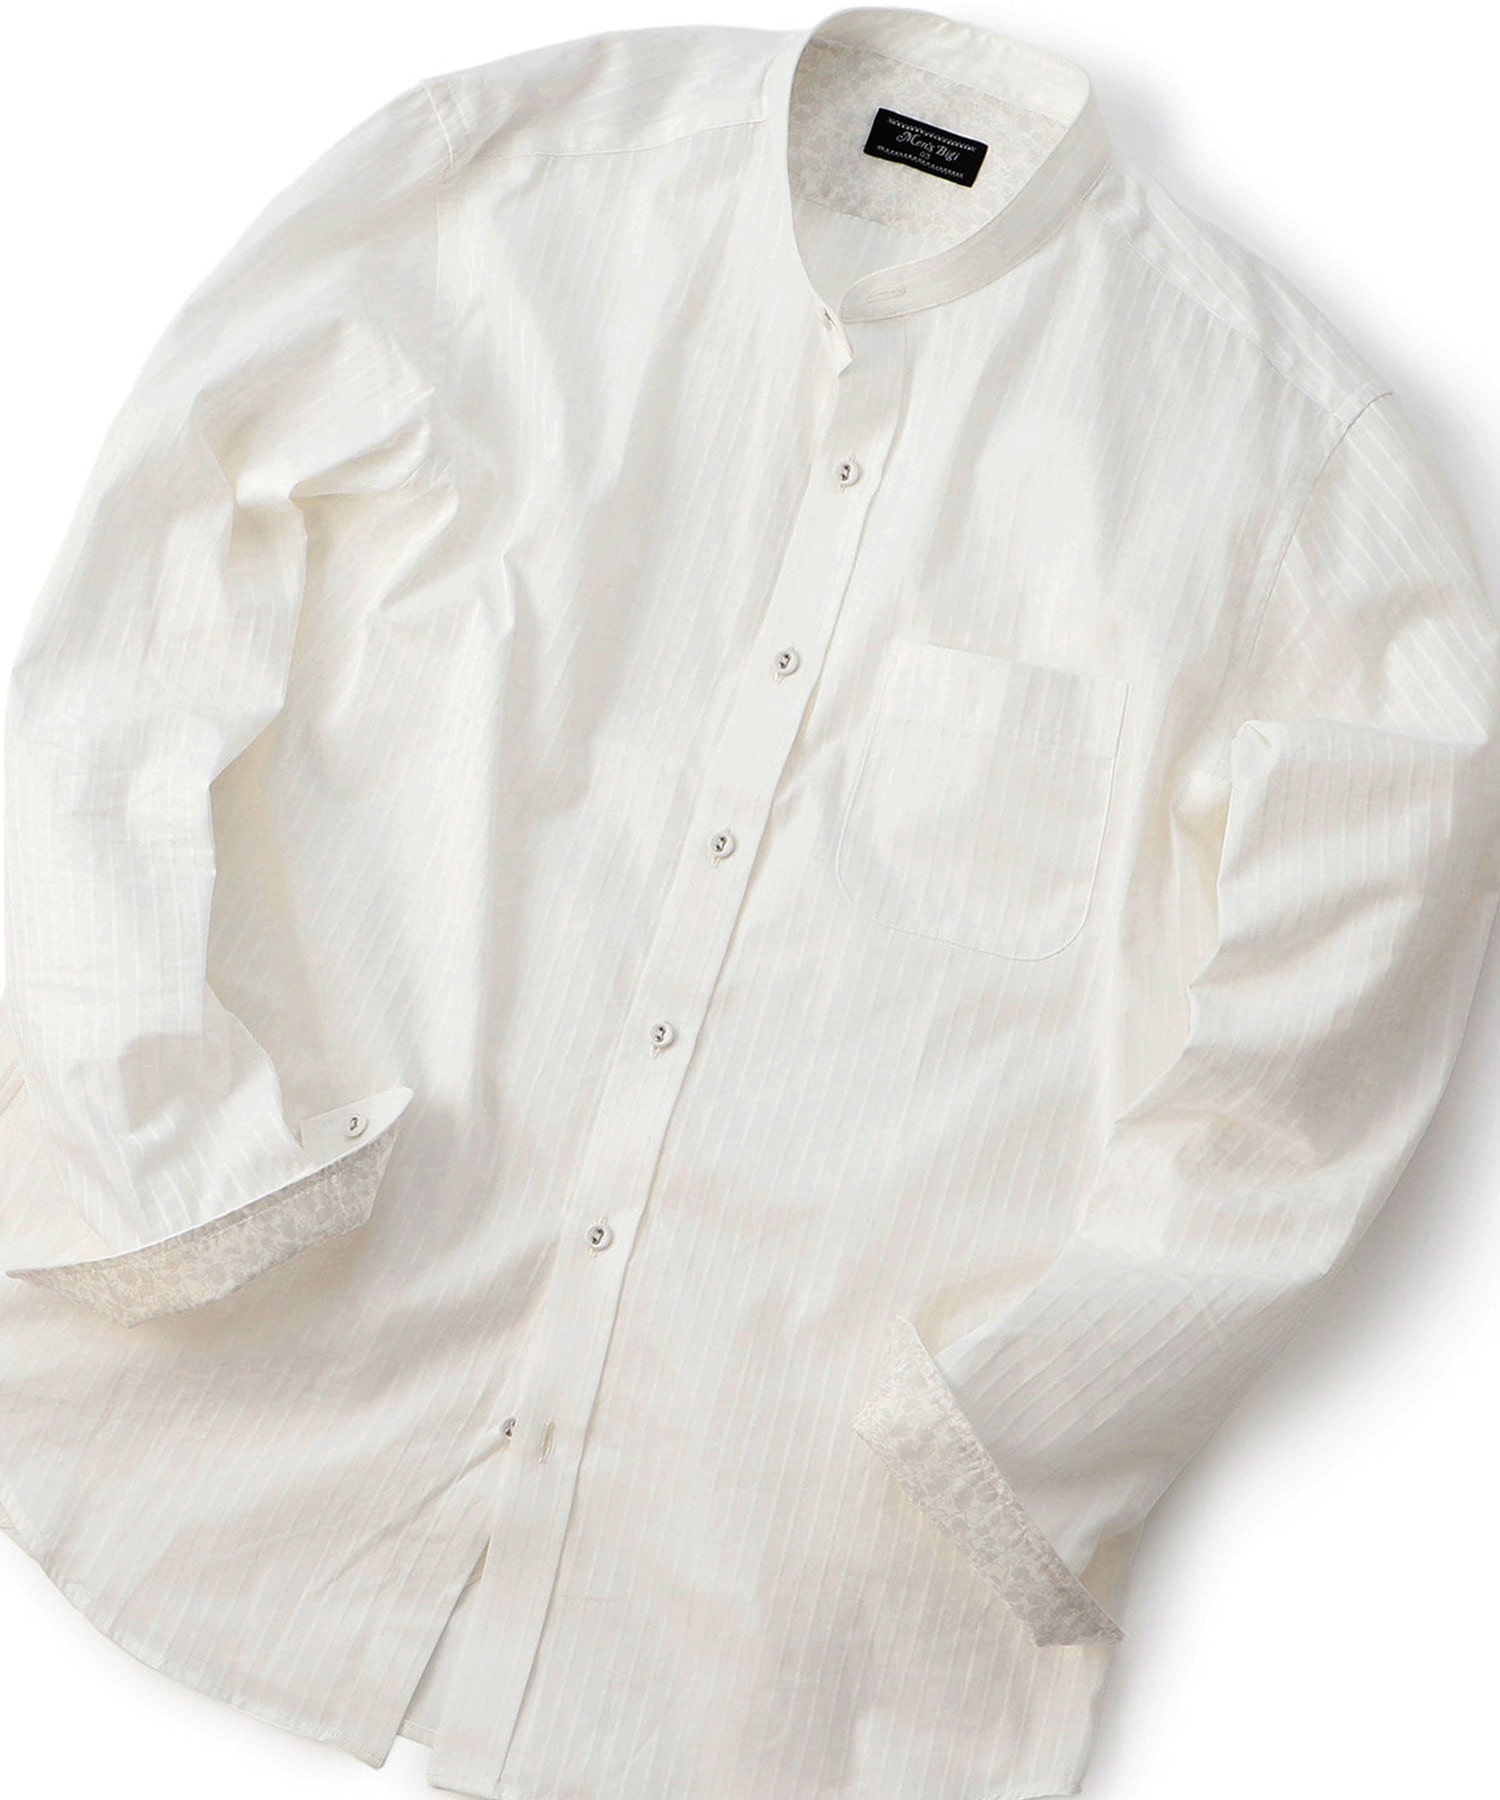 ストライプ ストレッチバンドカラーシャツ メンズファッション通販 Men S Bigi Online Store メンズビギ オンラインストア